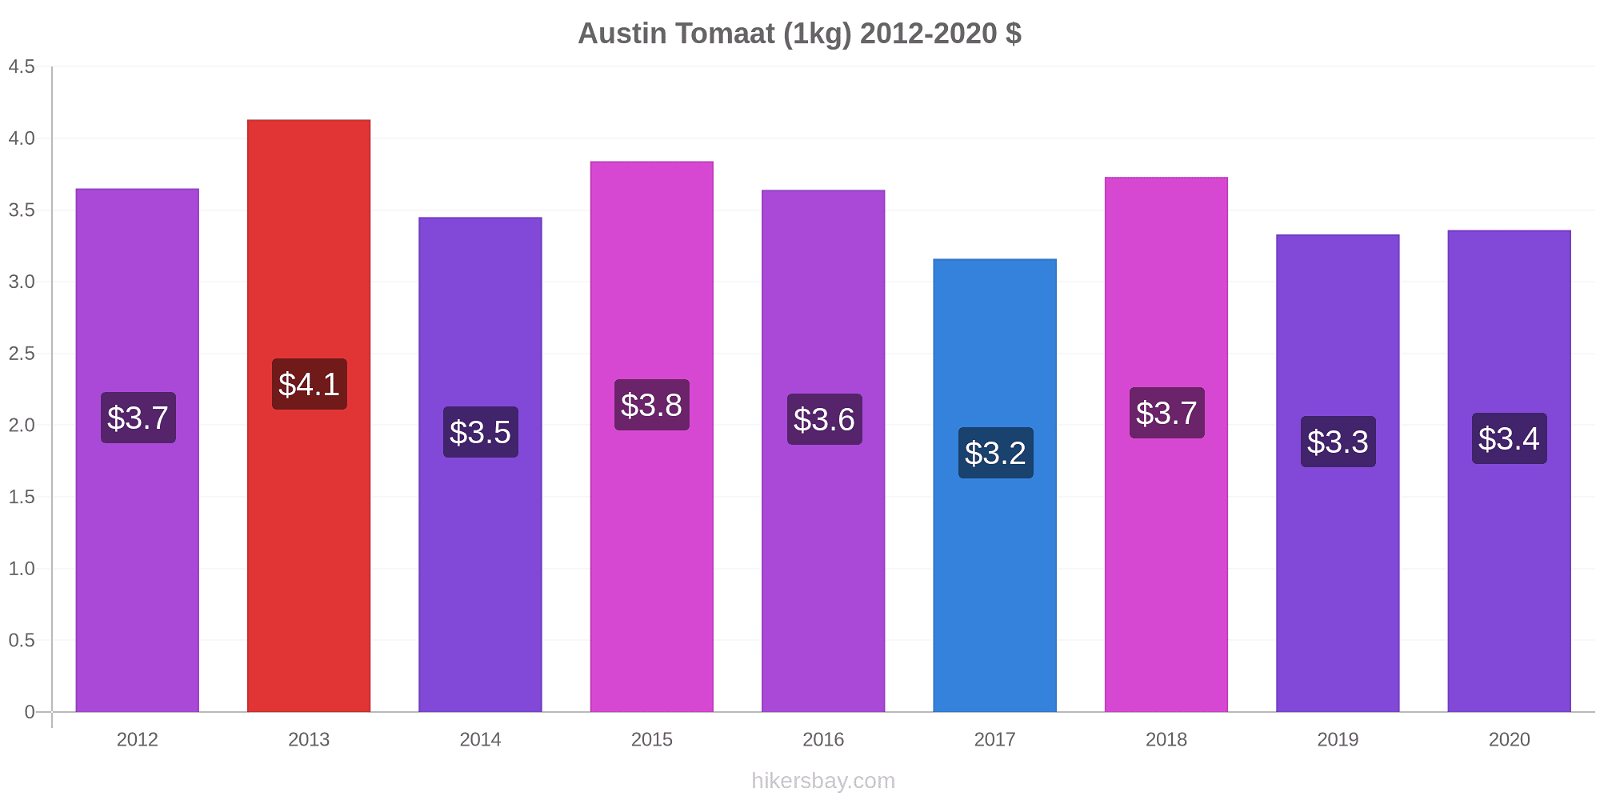 Austin prijswijzigingen Tomaat (1kg) hikersbay.com